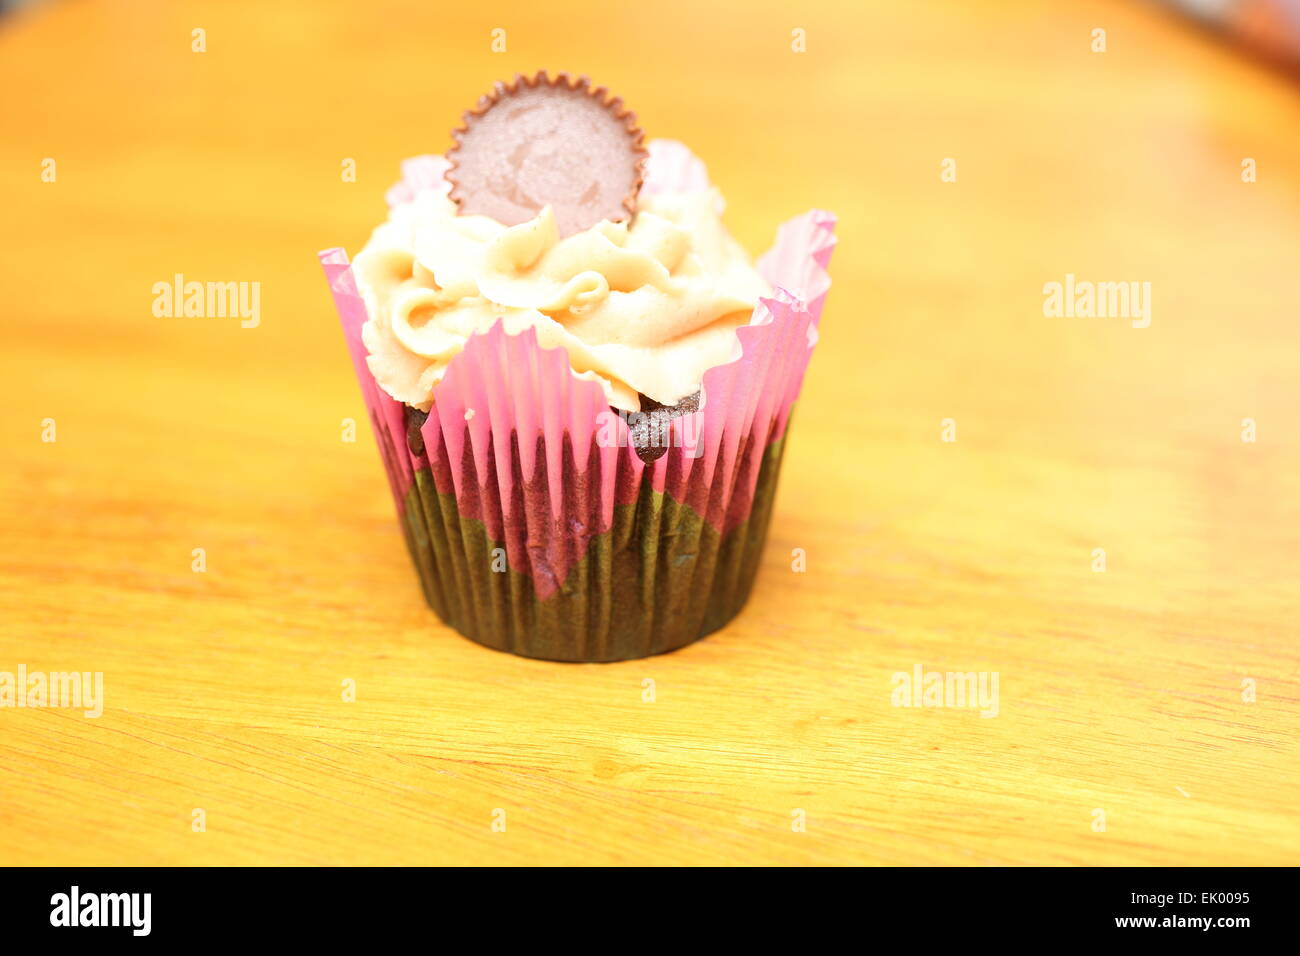 Cupcake au beurre d'arachides REESE sur une table Banque D'Images